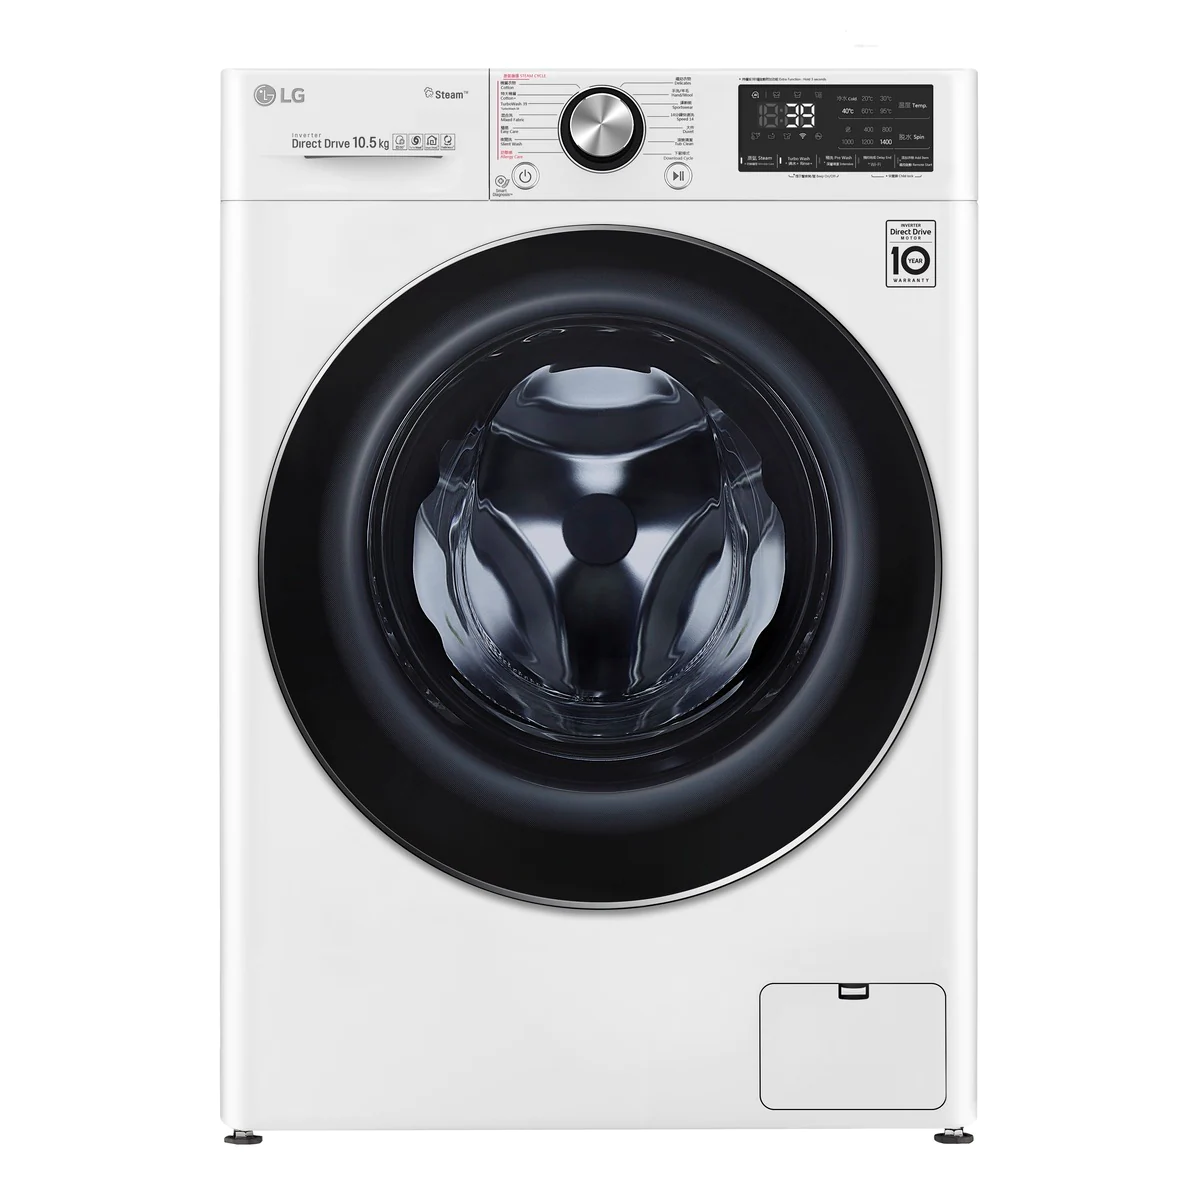 LG F-14105V2W + WF-DT90VW Stacking Jumbo Washer Dryer Package 10.5kg/9kg 珍寶洗衣機乾衣機疂機套餐 10.5kg/9kg